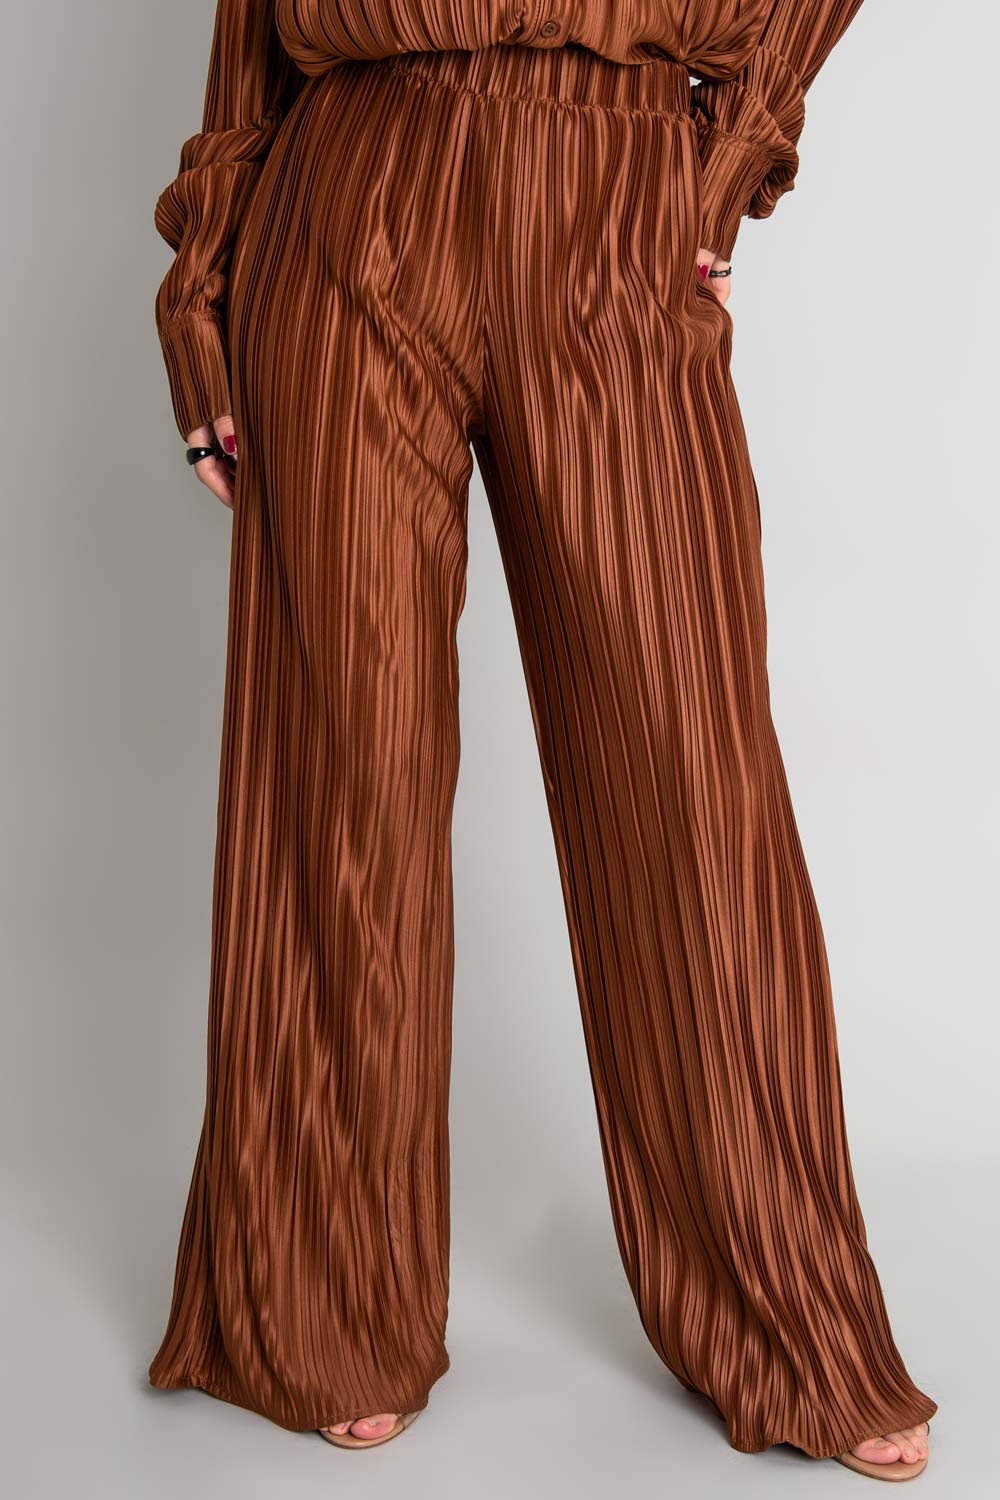 Pantalón satinado wide leg con plisados en tejido y cintura alta con pretina elástica.